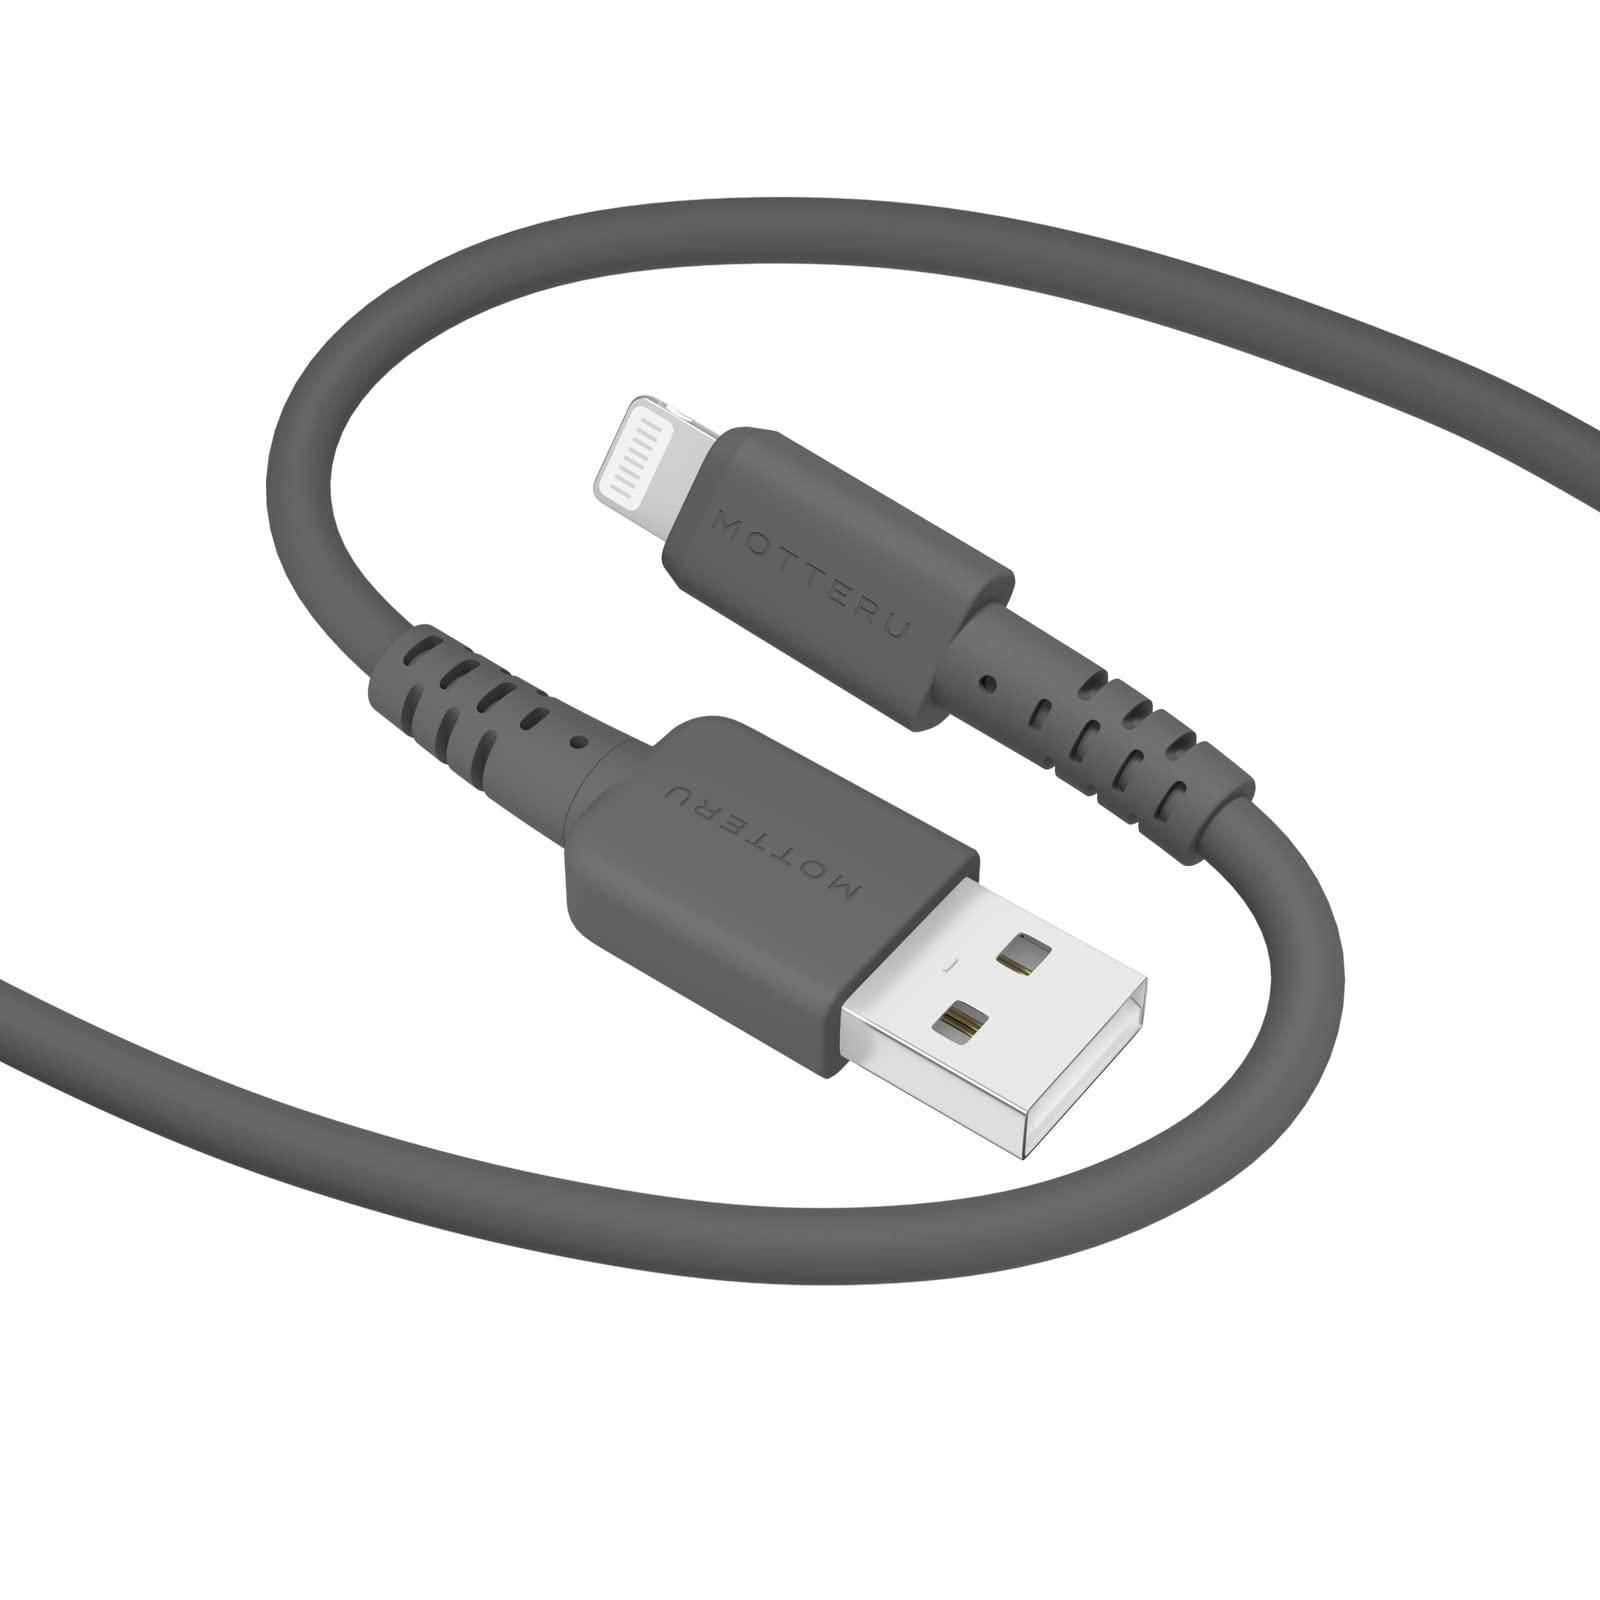 MOTTERU (モッテル) USB-A to Lightning シリコンケーブル Mfi認証 充電 データ転送 しなやかでやわらかい 絡まない 断線に強い iPhone/iPad 対応 ケーブルバンド 付属 1.0m スモーキーブラック MOT-SCBALG100-BK